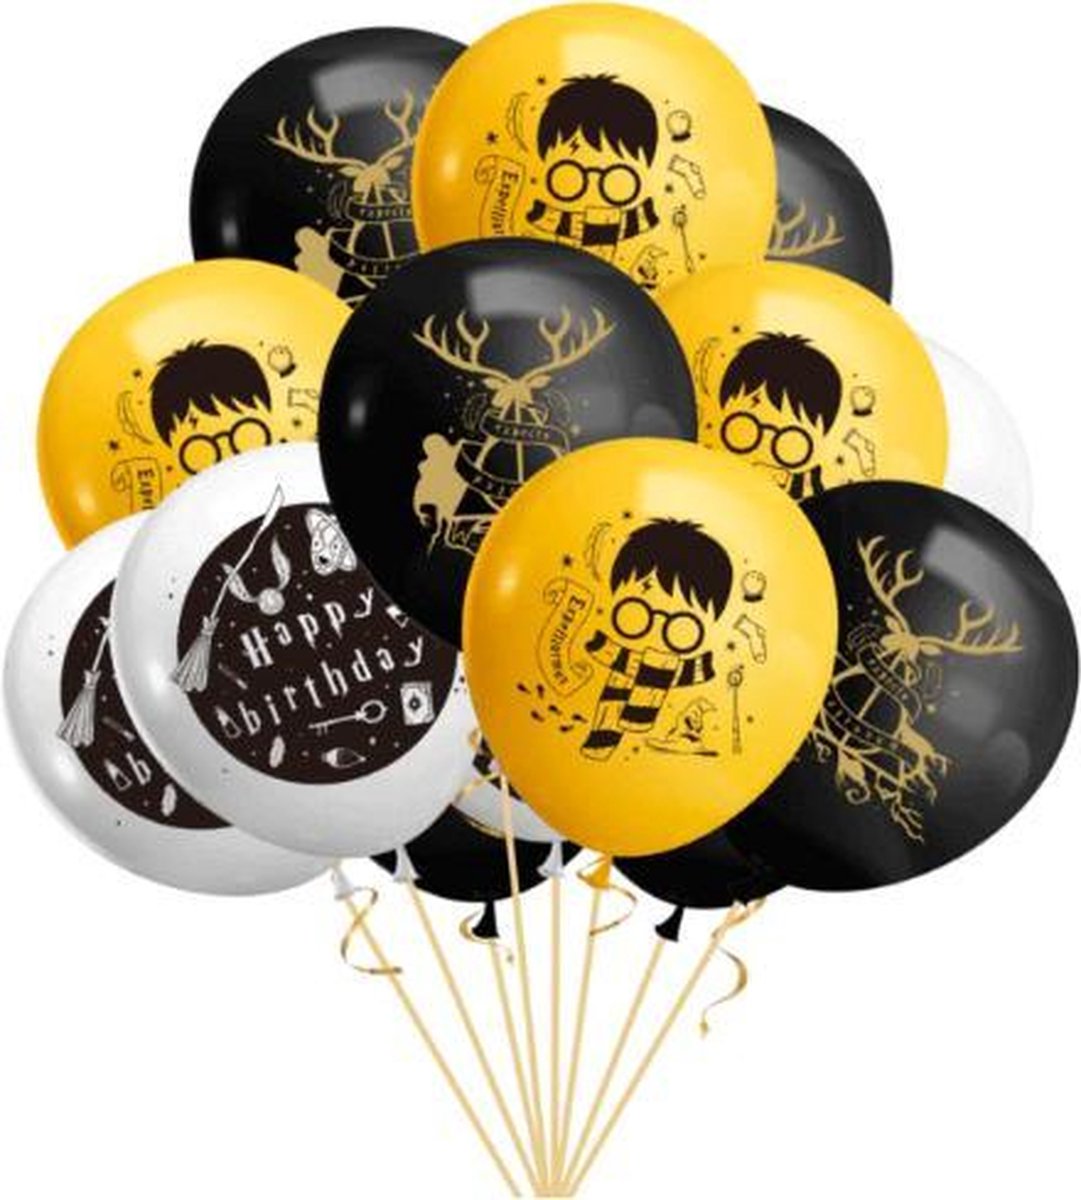 ProductGoods - 10x Harry Potter Ballons Anniversaire - Anniversaire Enfants  - Ballons